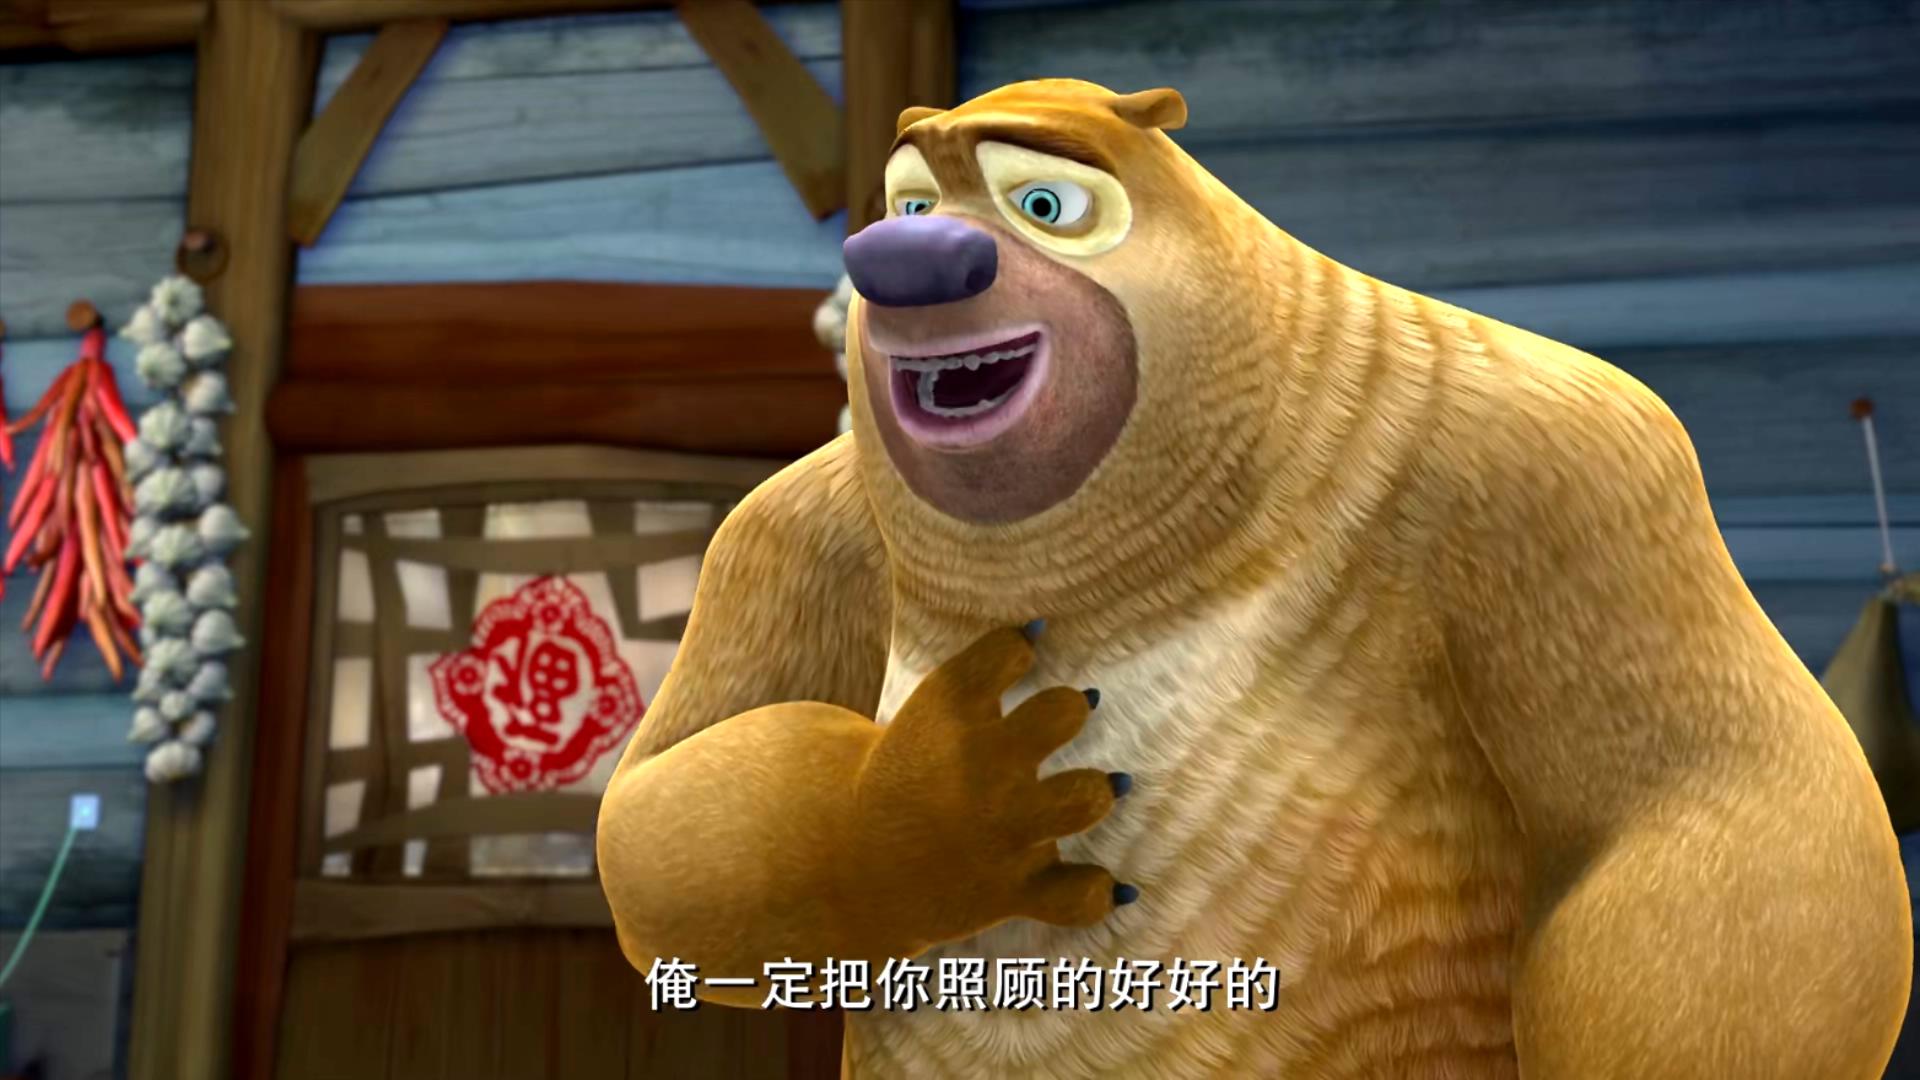 2014 熊出没之春日对对碰 1080P 高清 国语中字 52集 MP4 国产 卡通 动画片 下载地址 – 旧时光